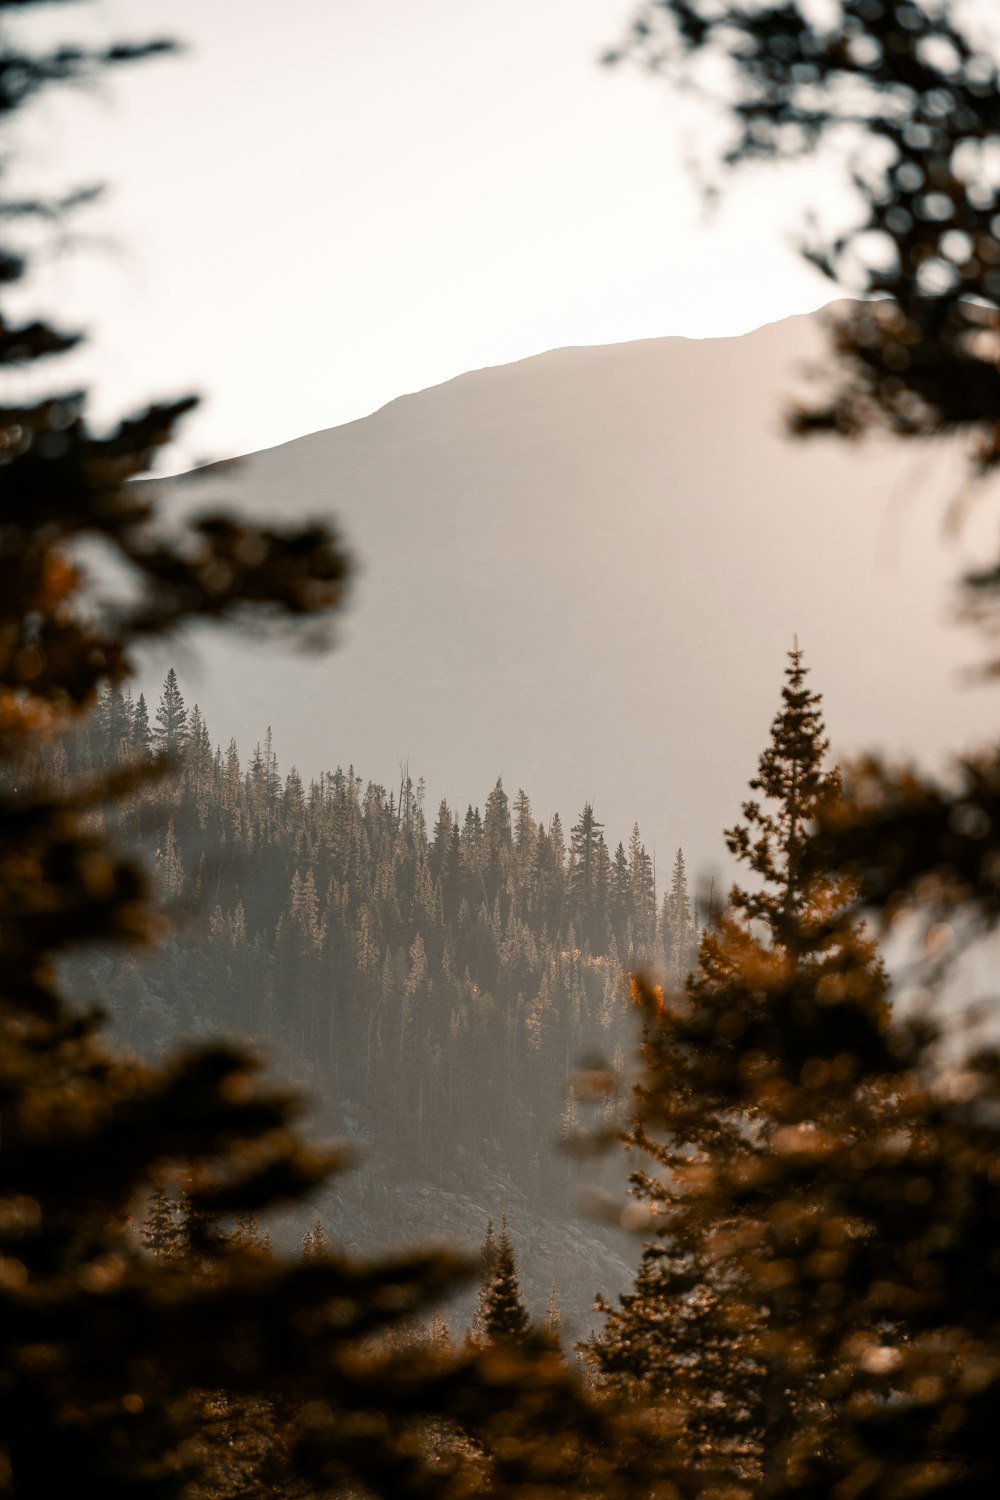 une vue d’une montagne avec des arbres au premier plan